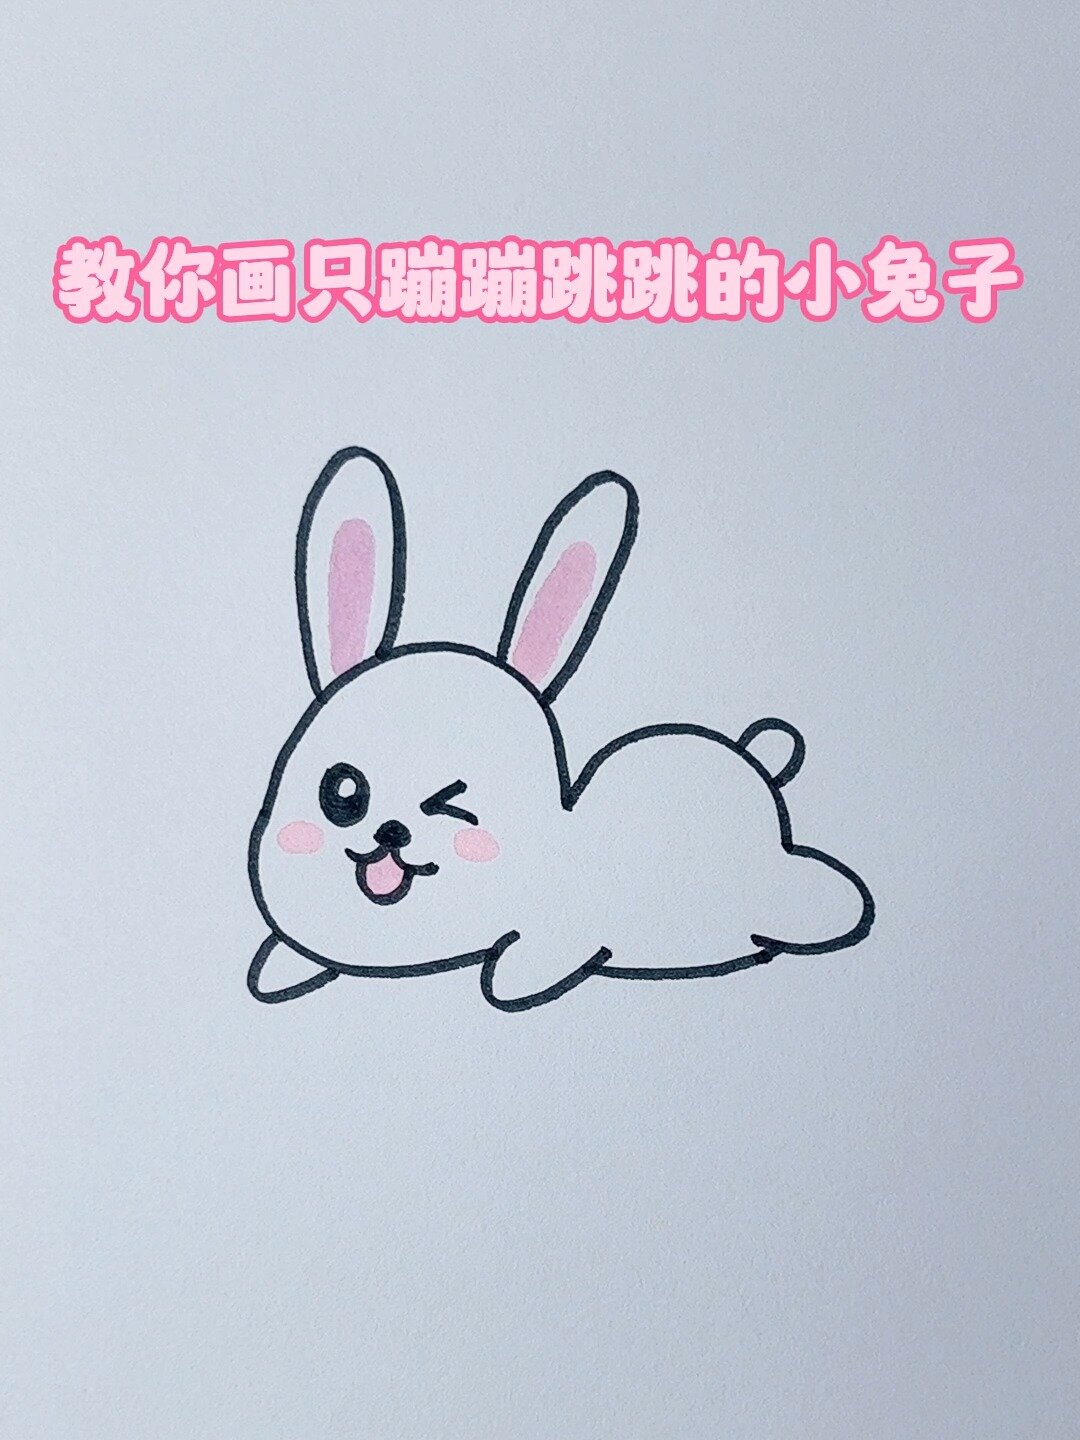 蹦蹦跳跳的小兔子,超可爱动物简笔画